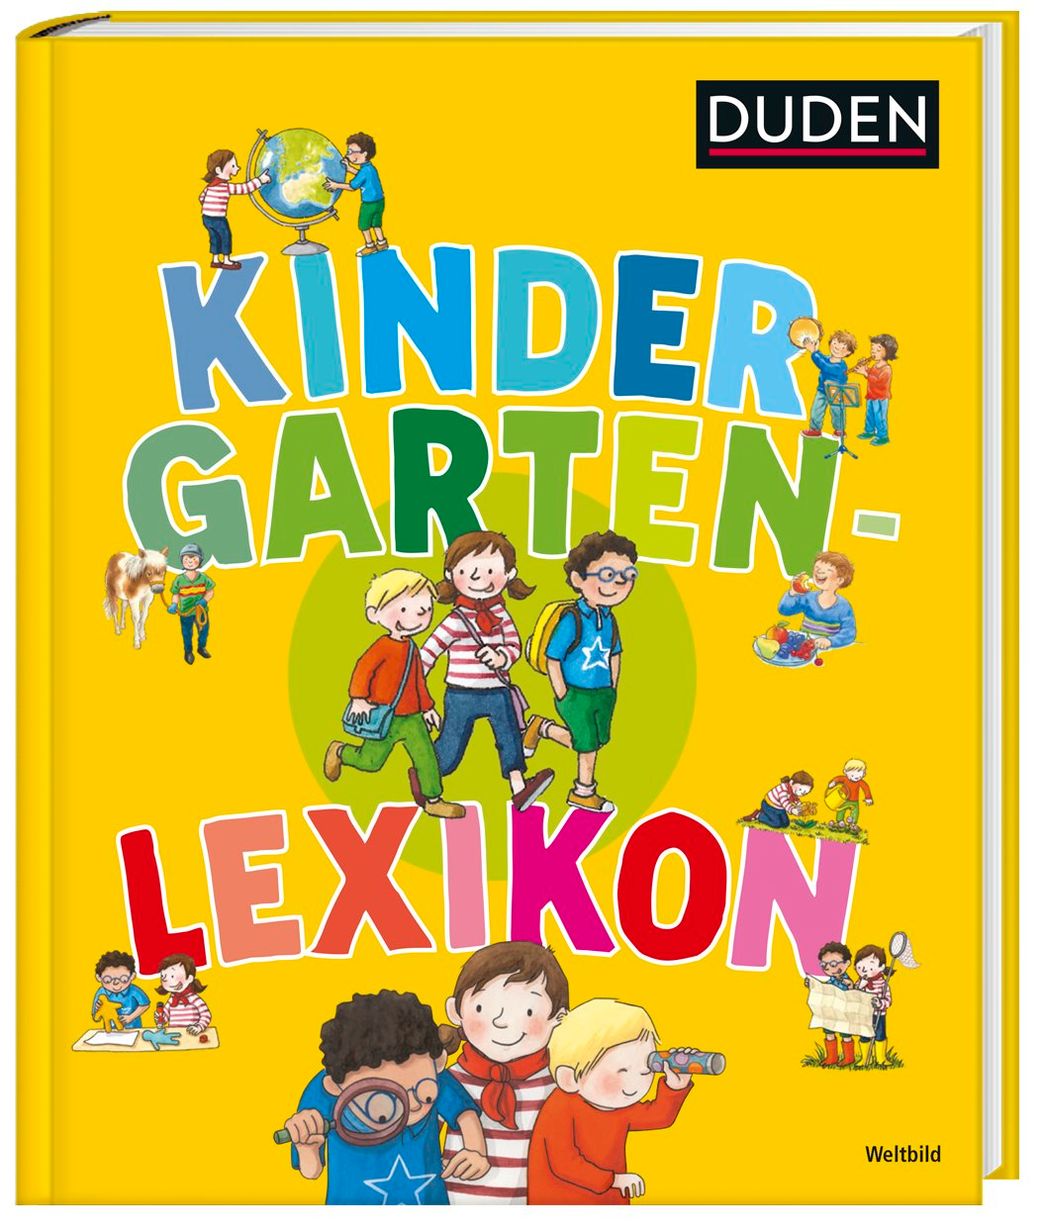 DUDEN Kindergarten-Lexikon - Buch als Weltbild-Ausgabe kaufen